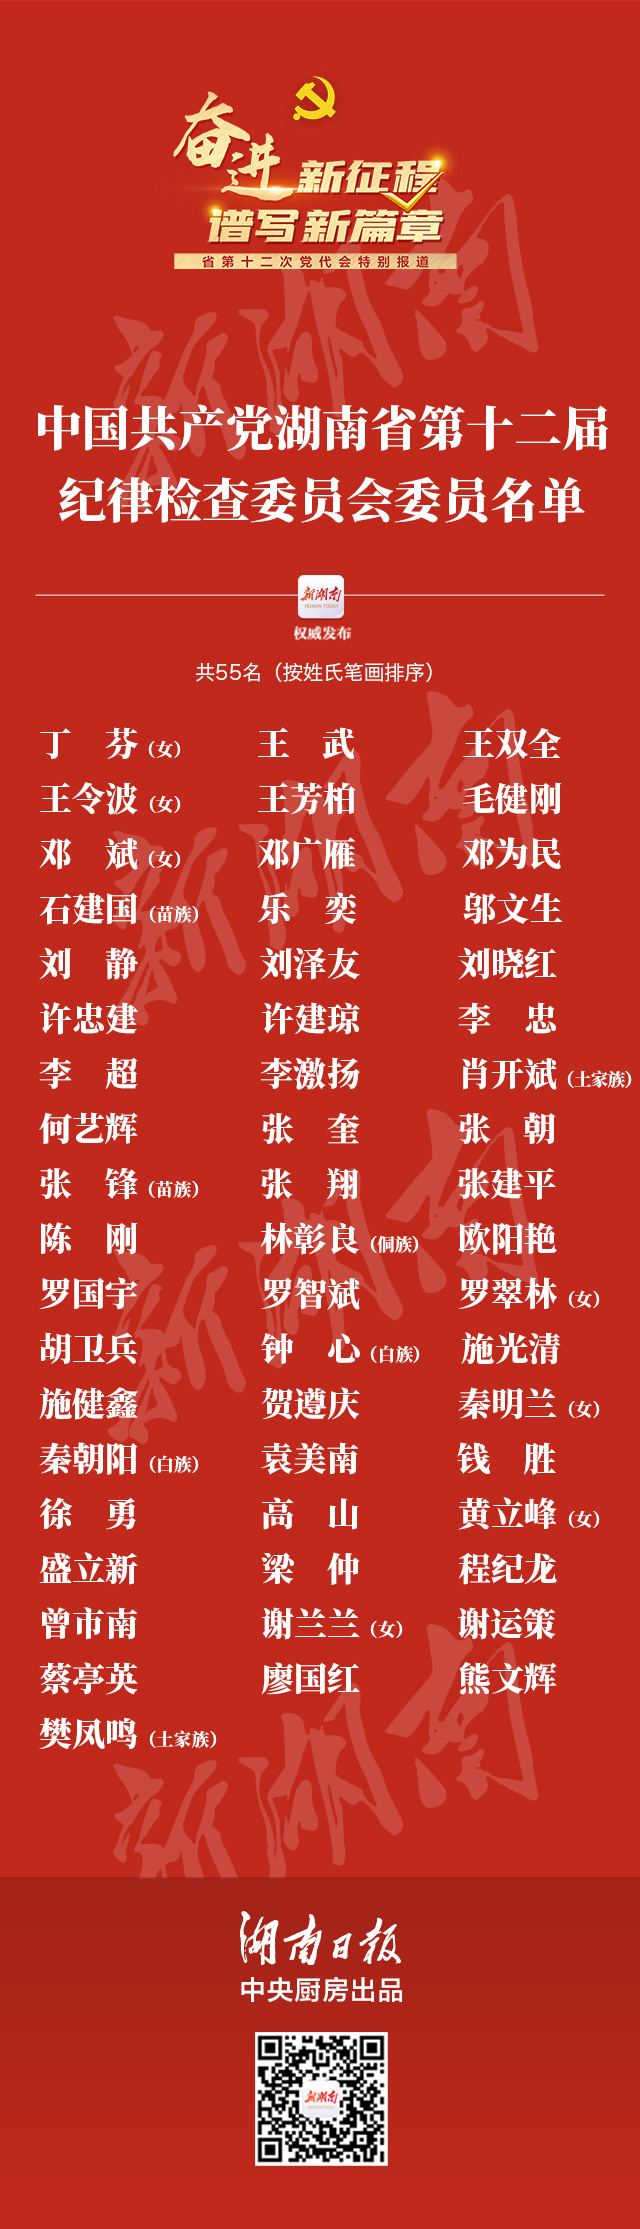 中国共产党湖南省第十二届纪律检查委员会委员名单